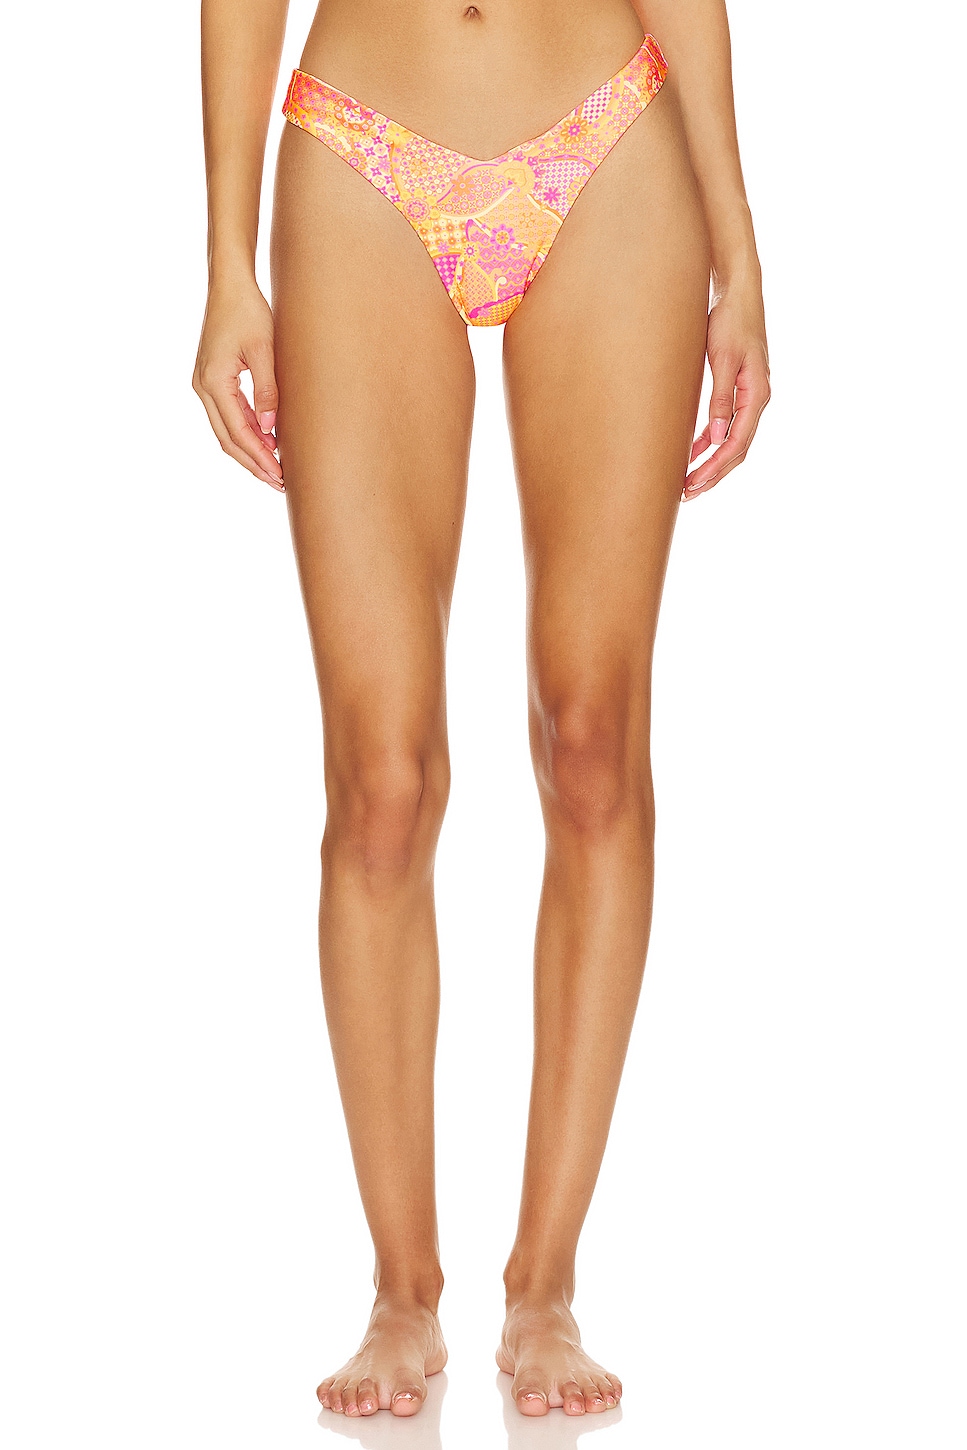 Cheeky V Bikini Bottom - Flamingo Pink Ribbed –Kulani Kinis